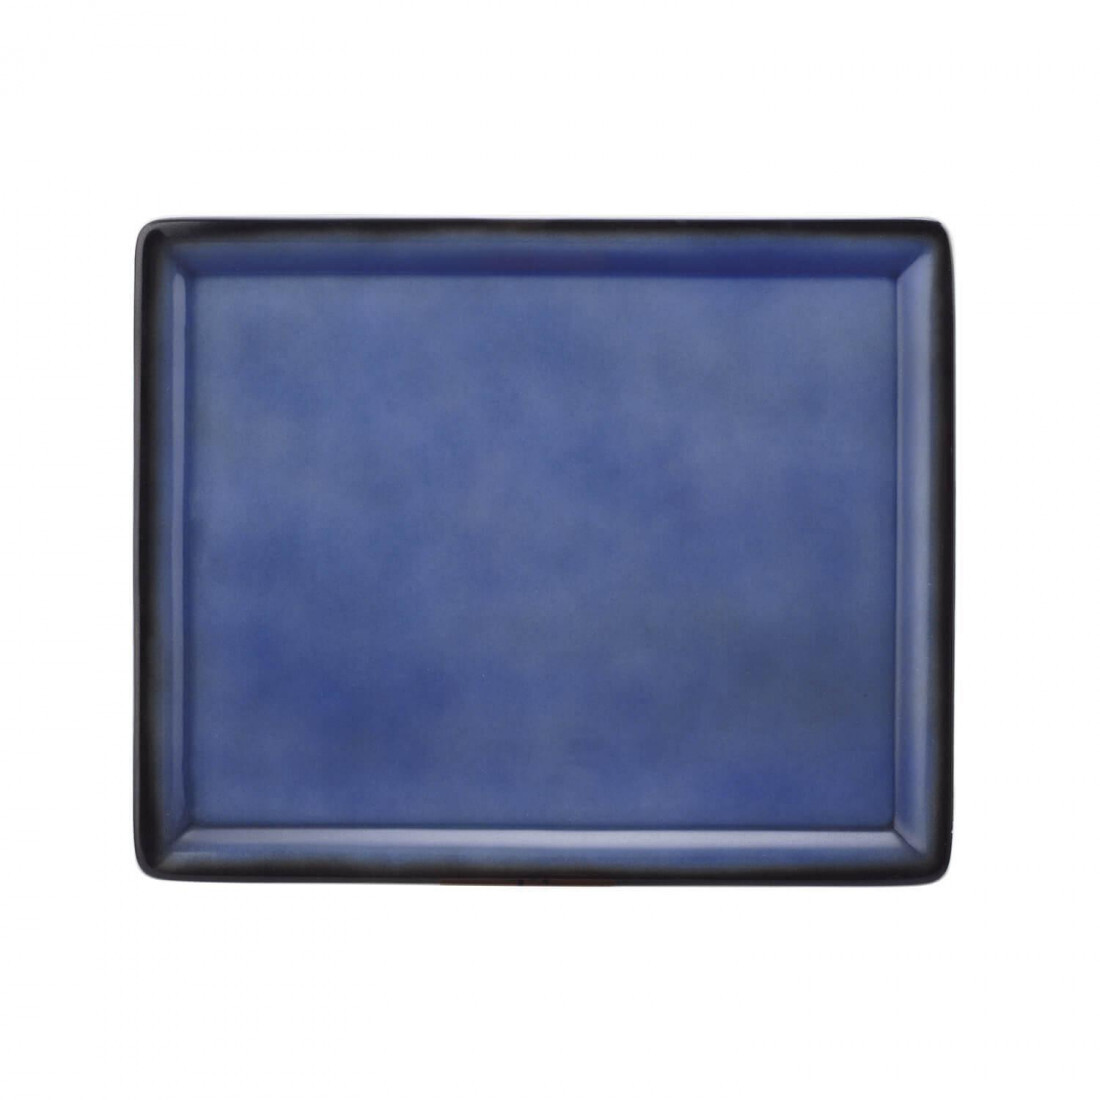 Seltmann - Buffet Gourmet - Platte GN 5170-1/2 57122 Royal Blau